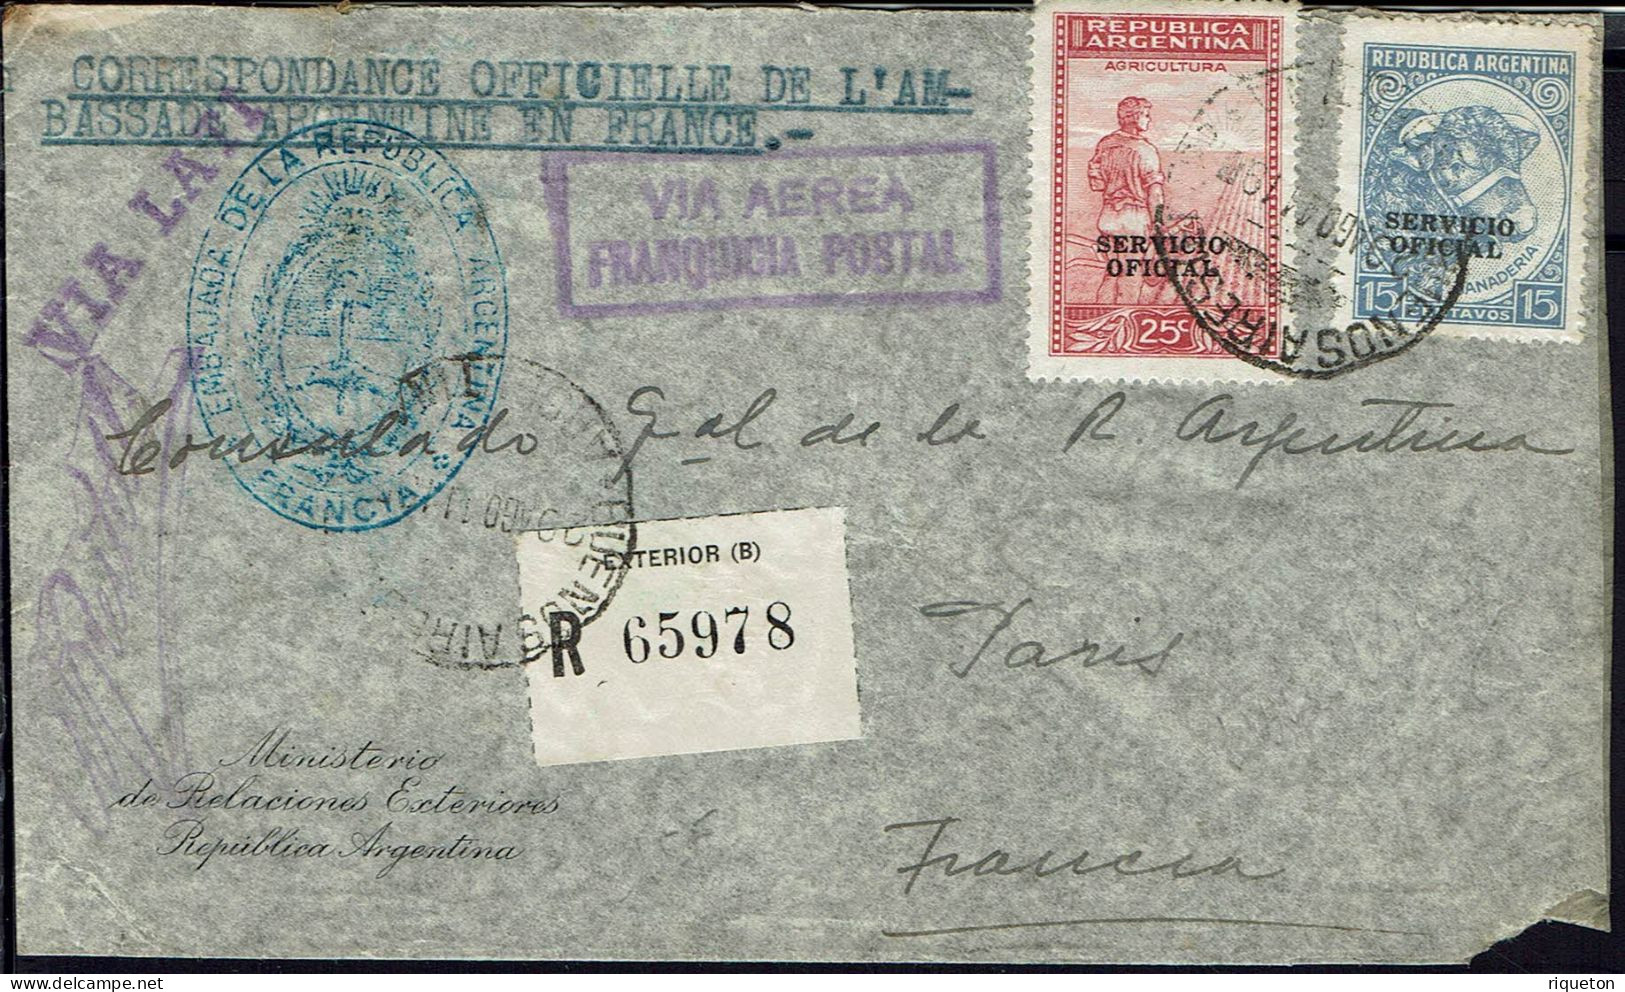 Argentine. 1941.Corr. Officielle Rec. De L'Ambassade, Buenos Aires, Via Condor Lati Pour Le Consulat D Argentine Paris. - Airmail